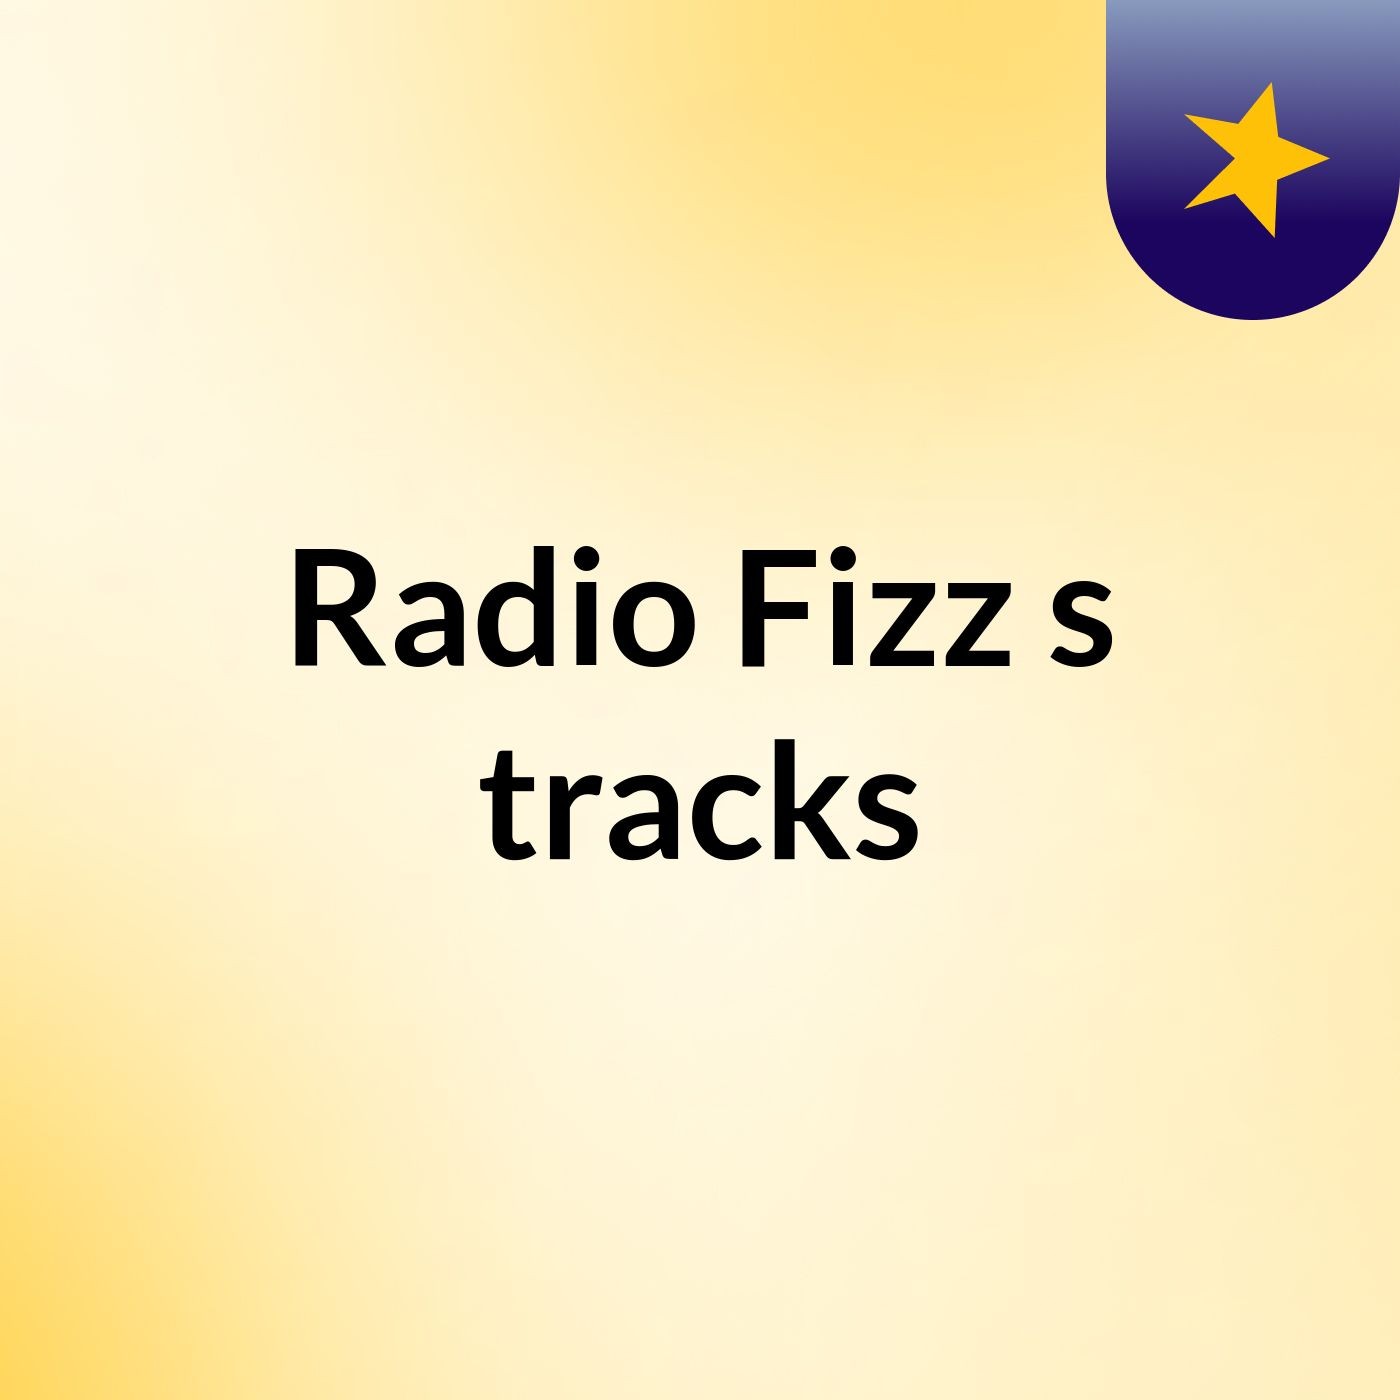 Radio Fizz's tracks